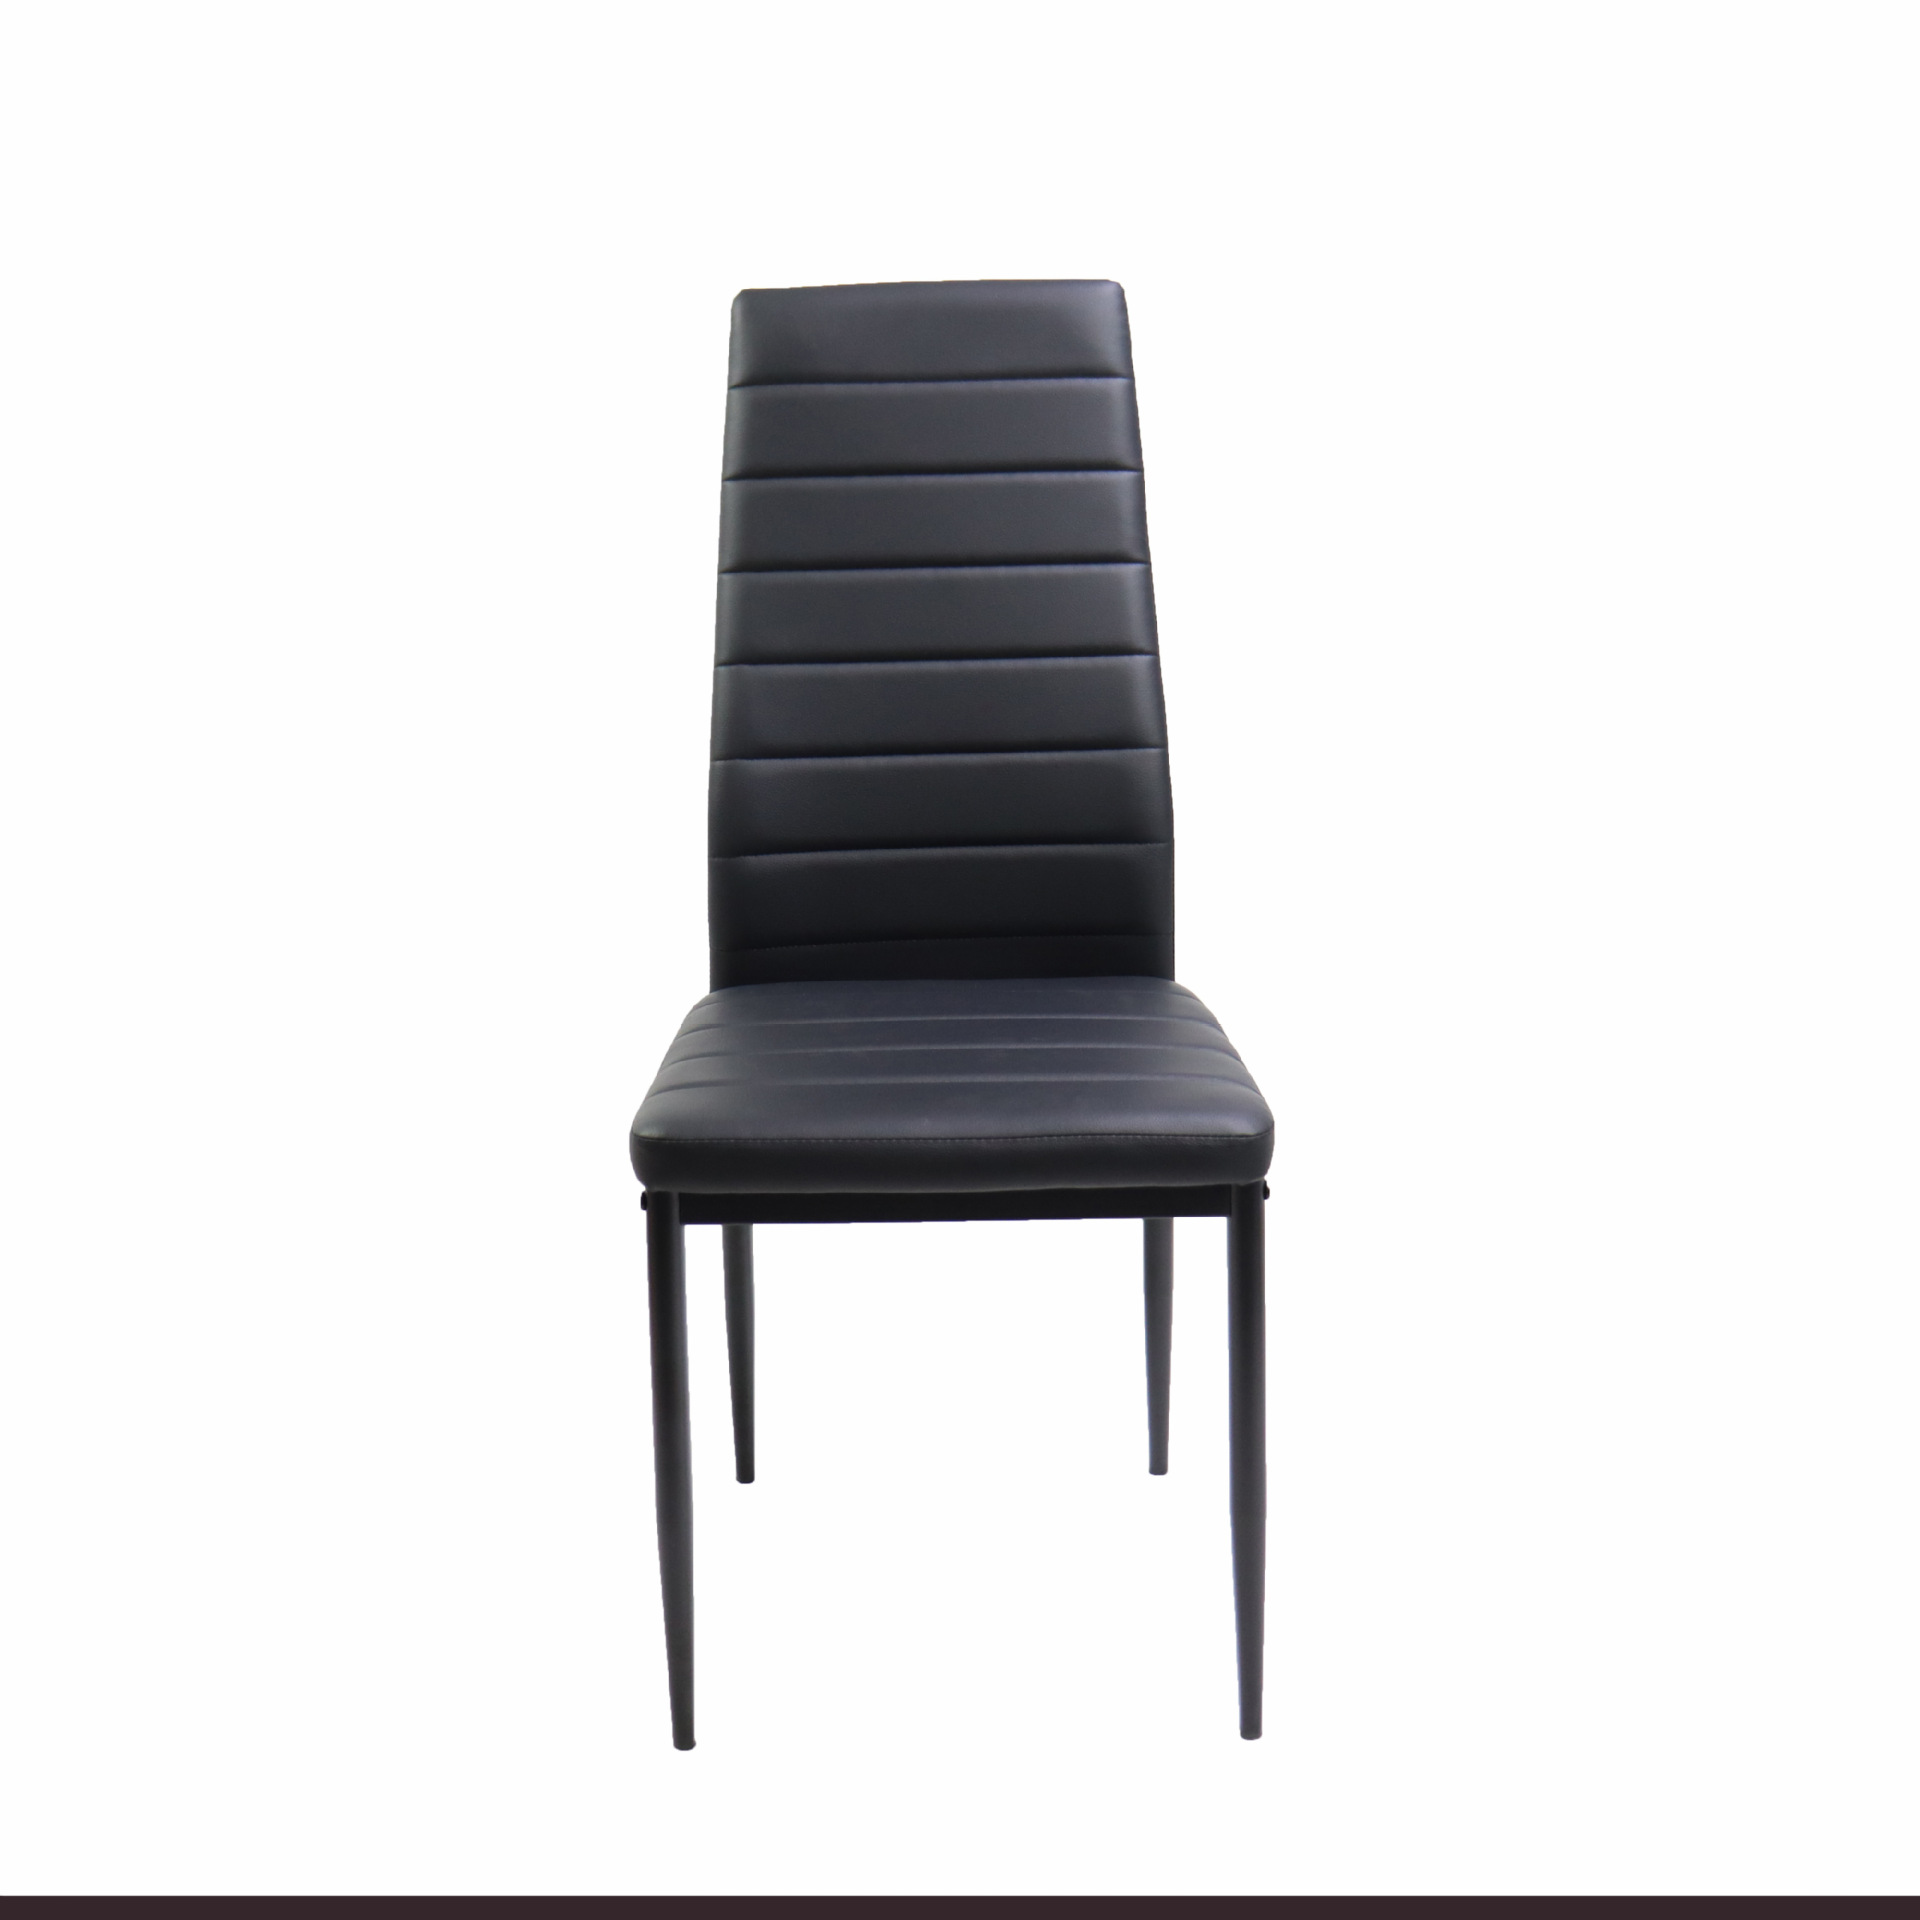 客厅横线椅子 酒店北欧式餐厅椅 简约家用靠背皮革铁艺拆装软包椅